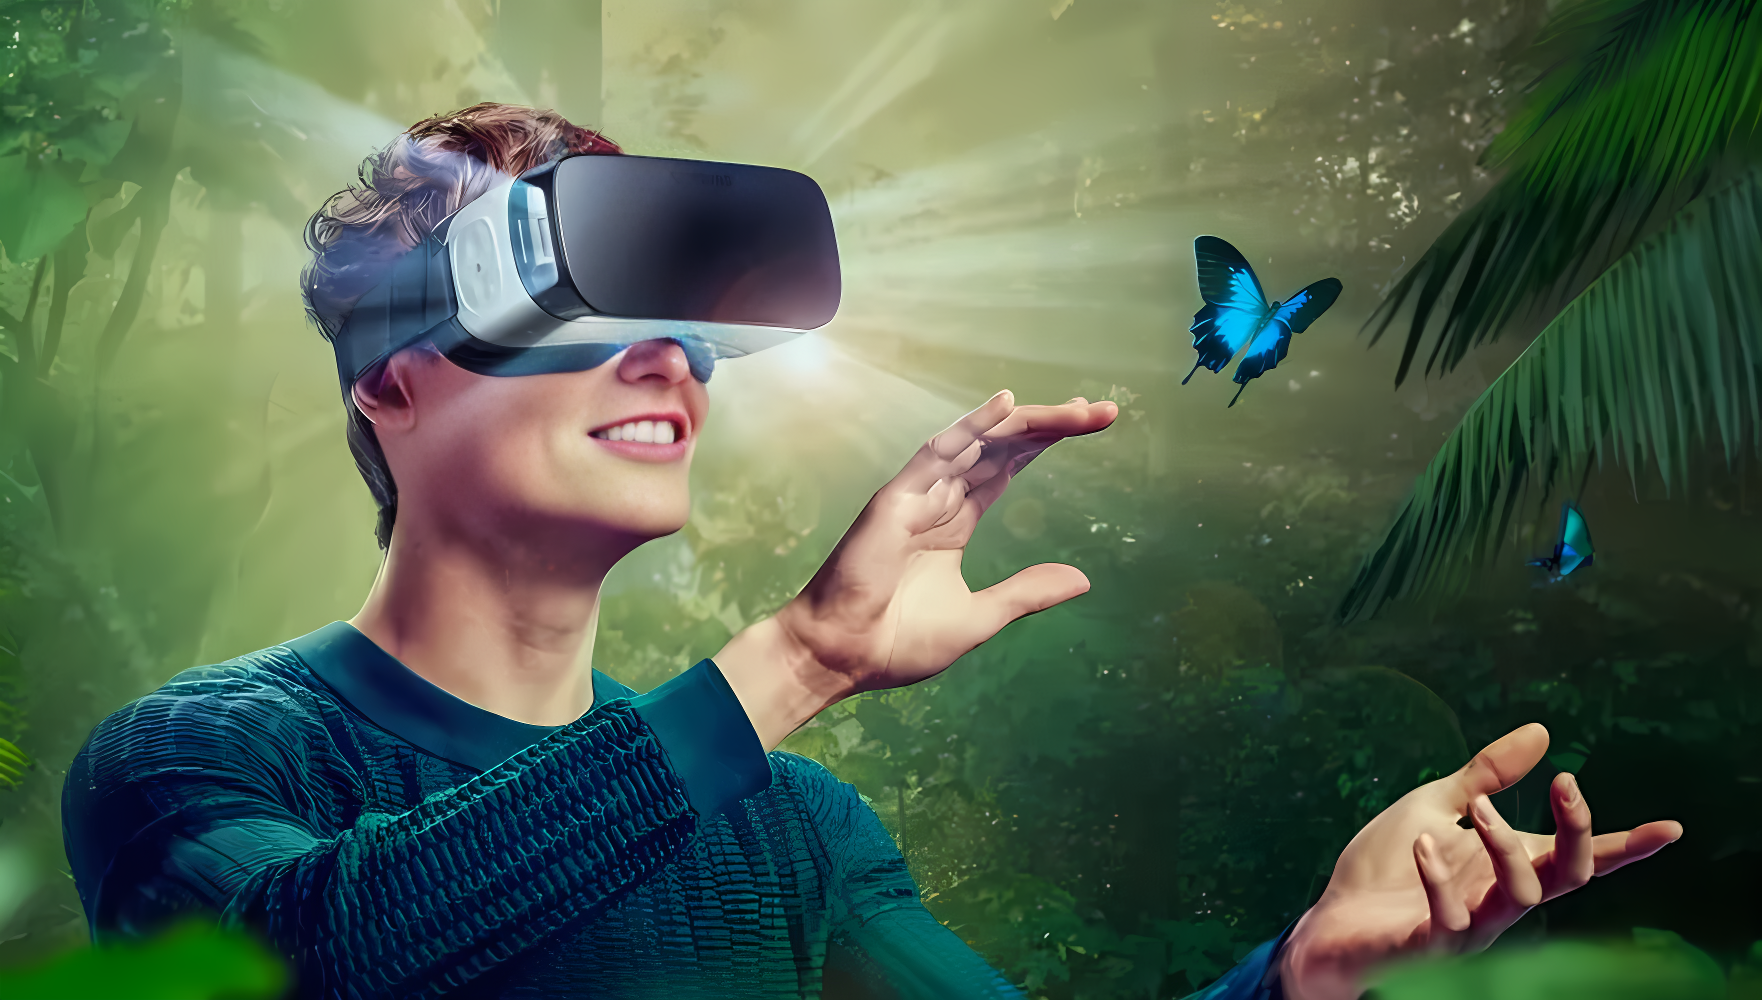 一位年轻人戴着虚拟现实头盔，似乎在触摸飞舞的蝴蝶，周围环境看起来像是热带雨林，场景既神秘又充满科技感。